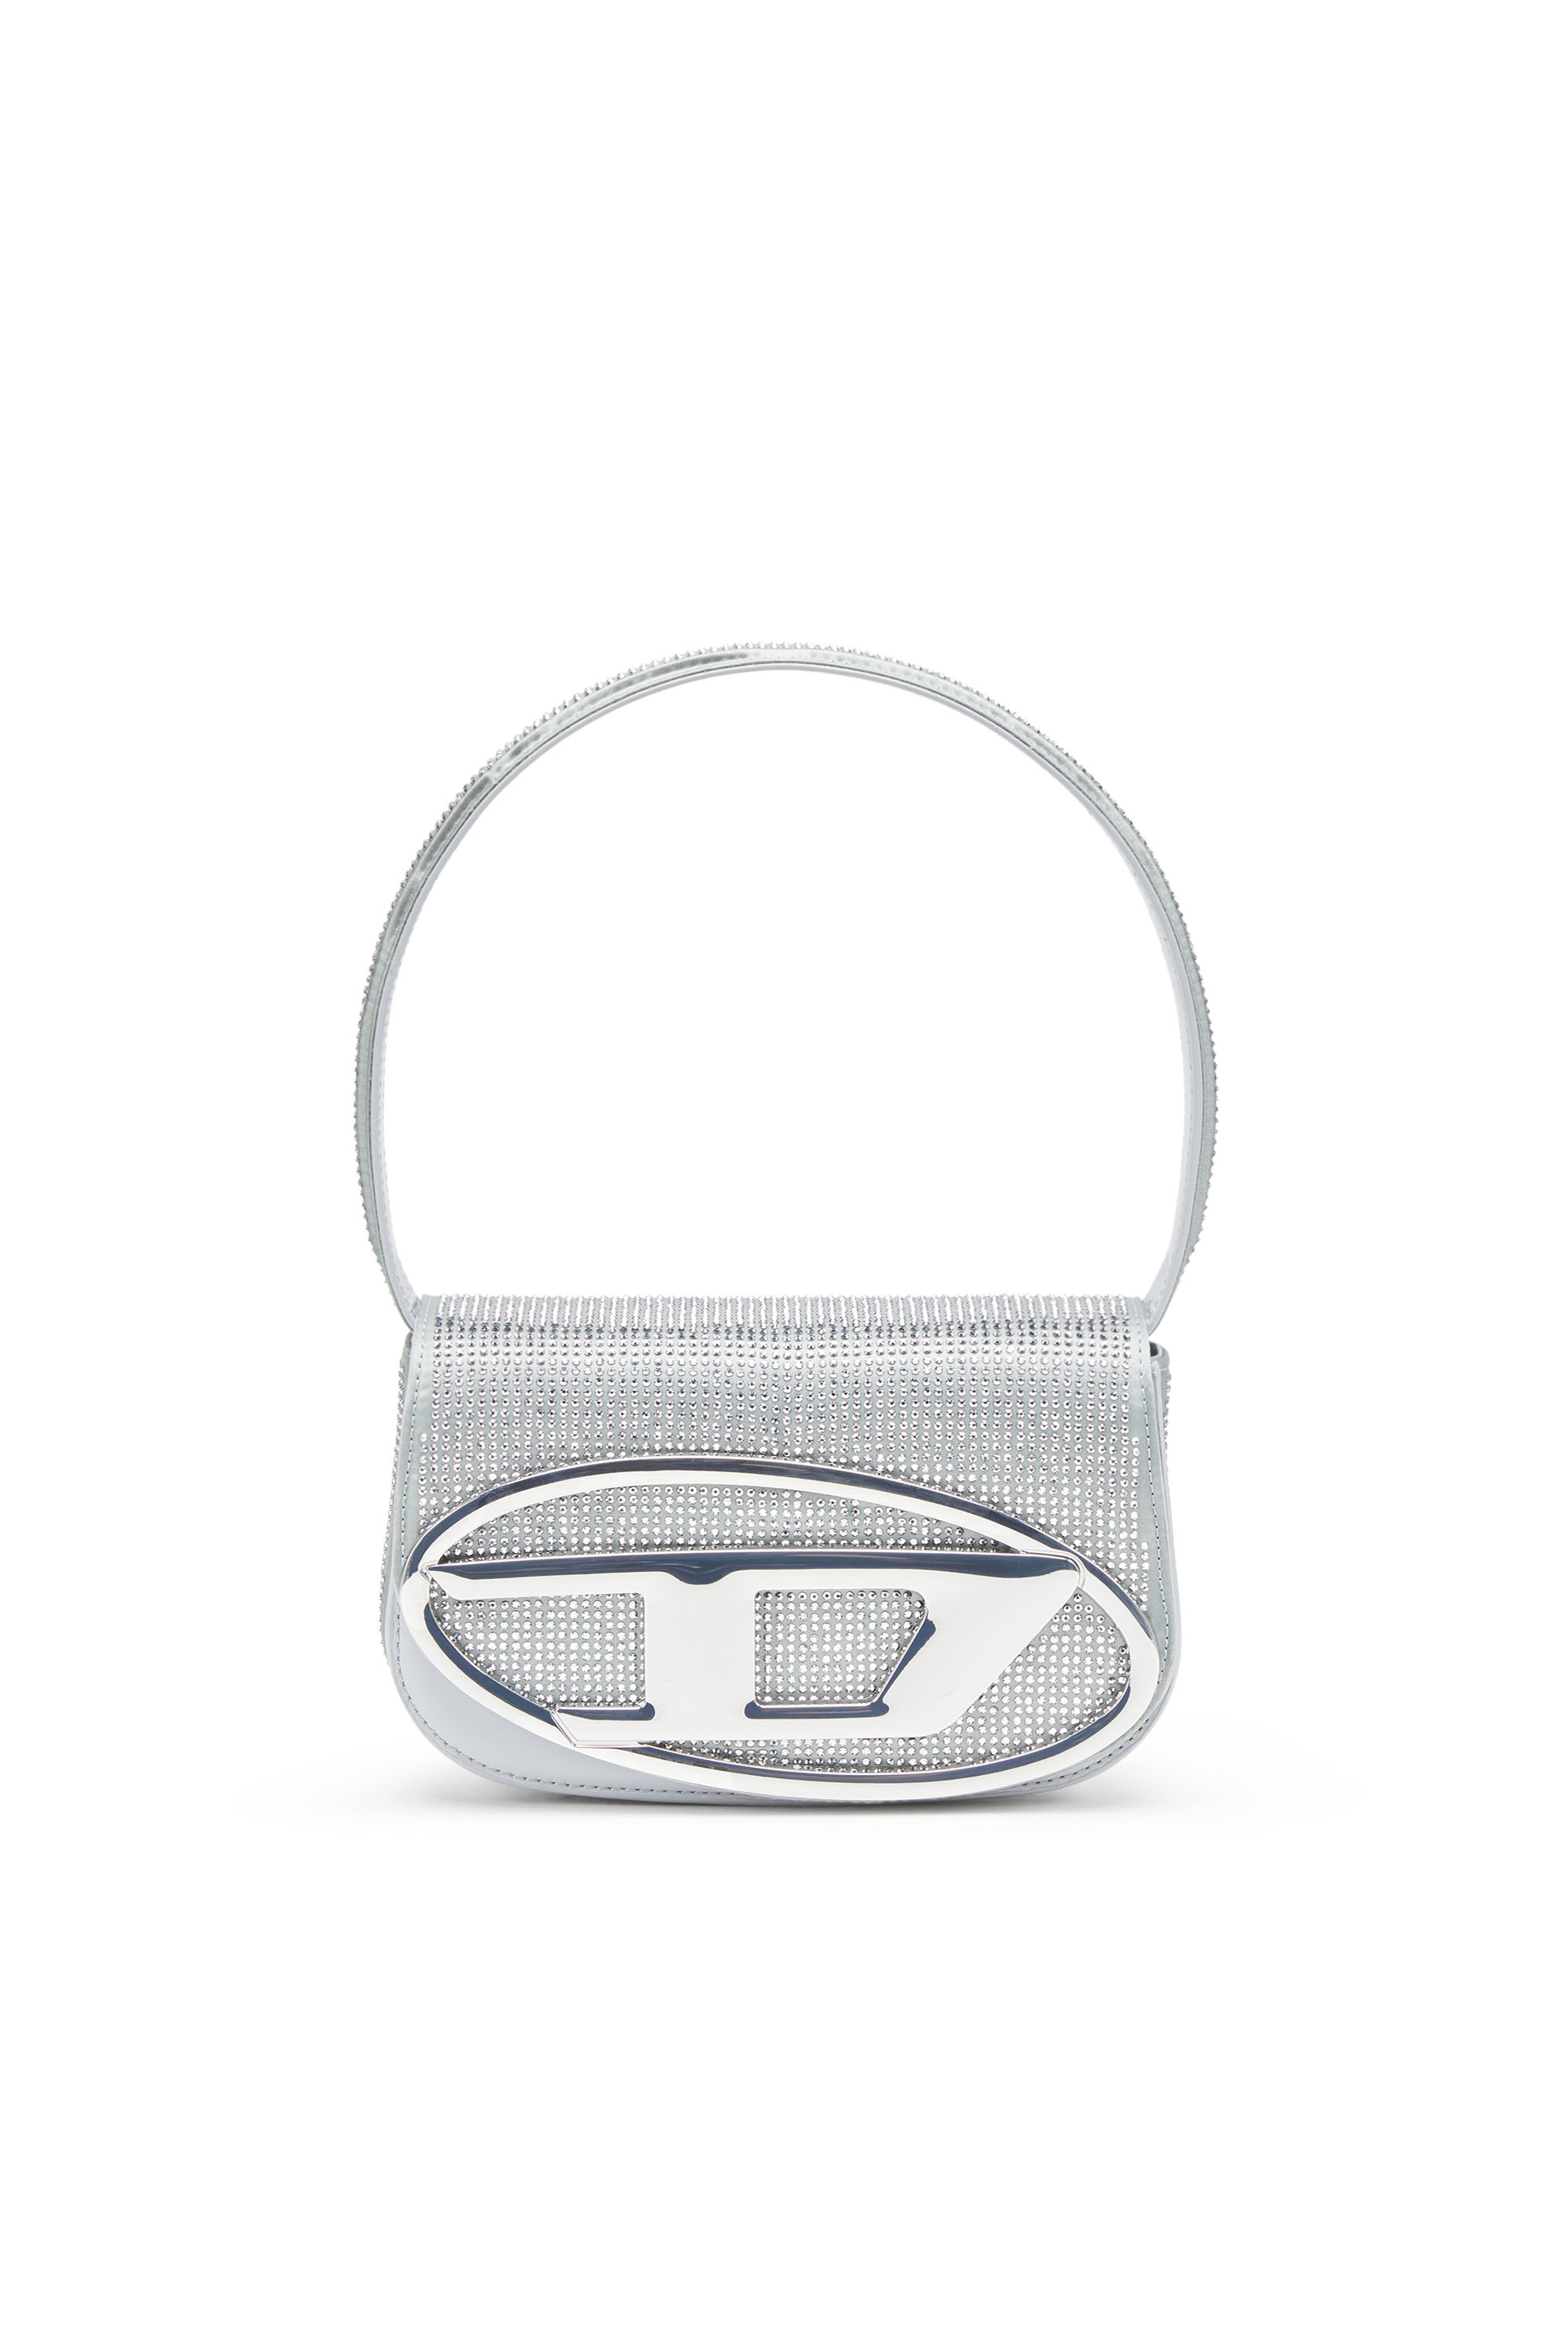 Diesel - 1DR Shoulder Bag - Sac épaule iconique en satin cristal - Sacs d'Épaule - Femme - Gris